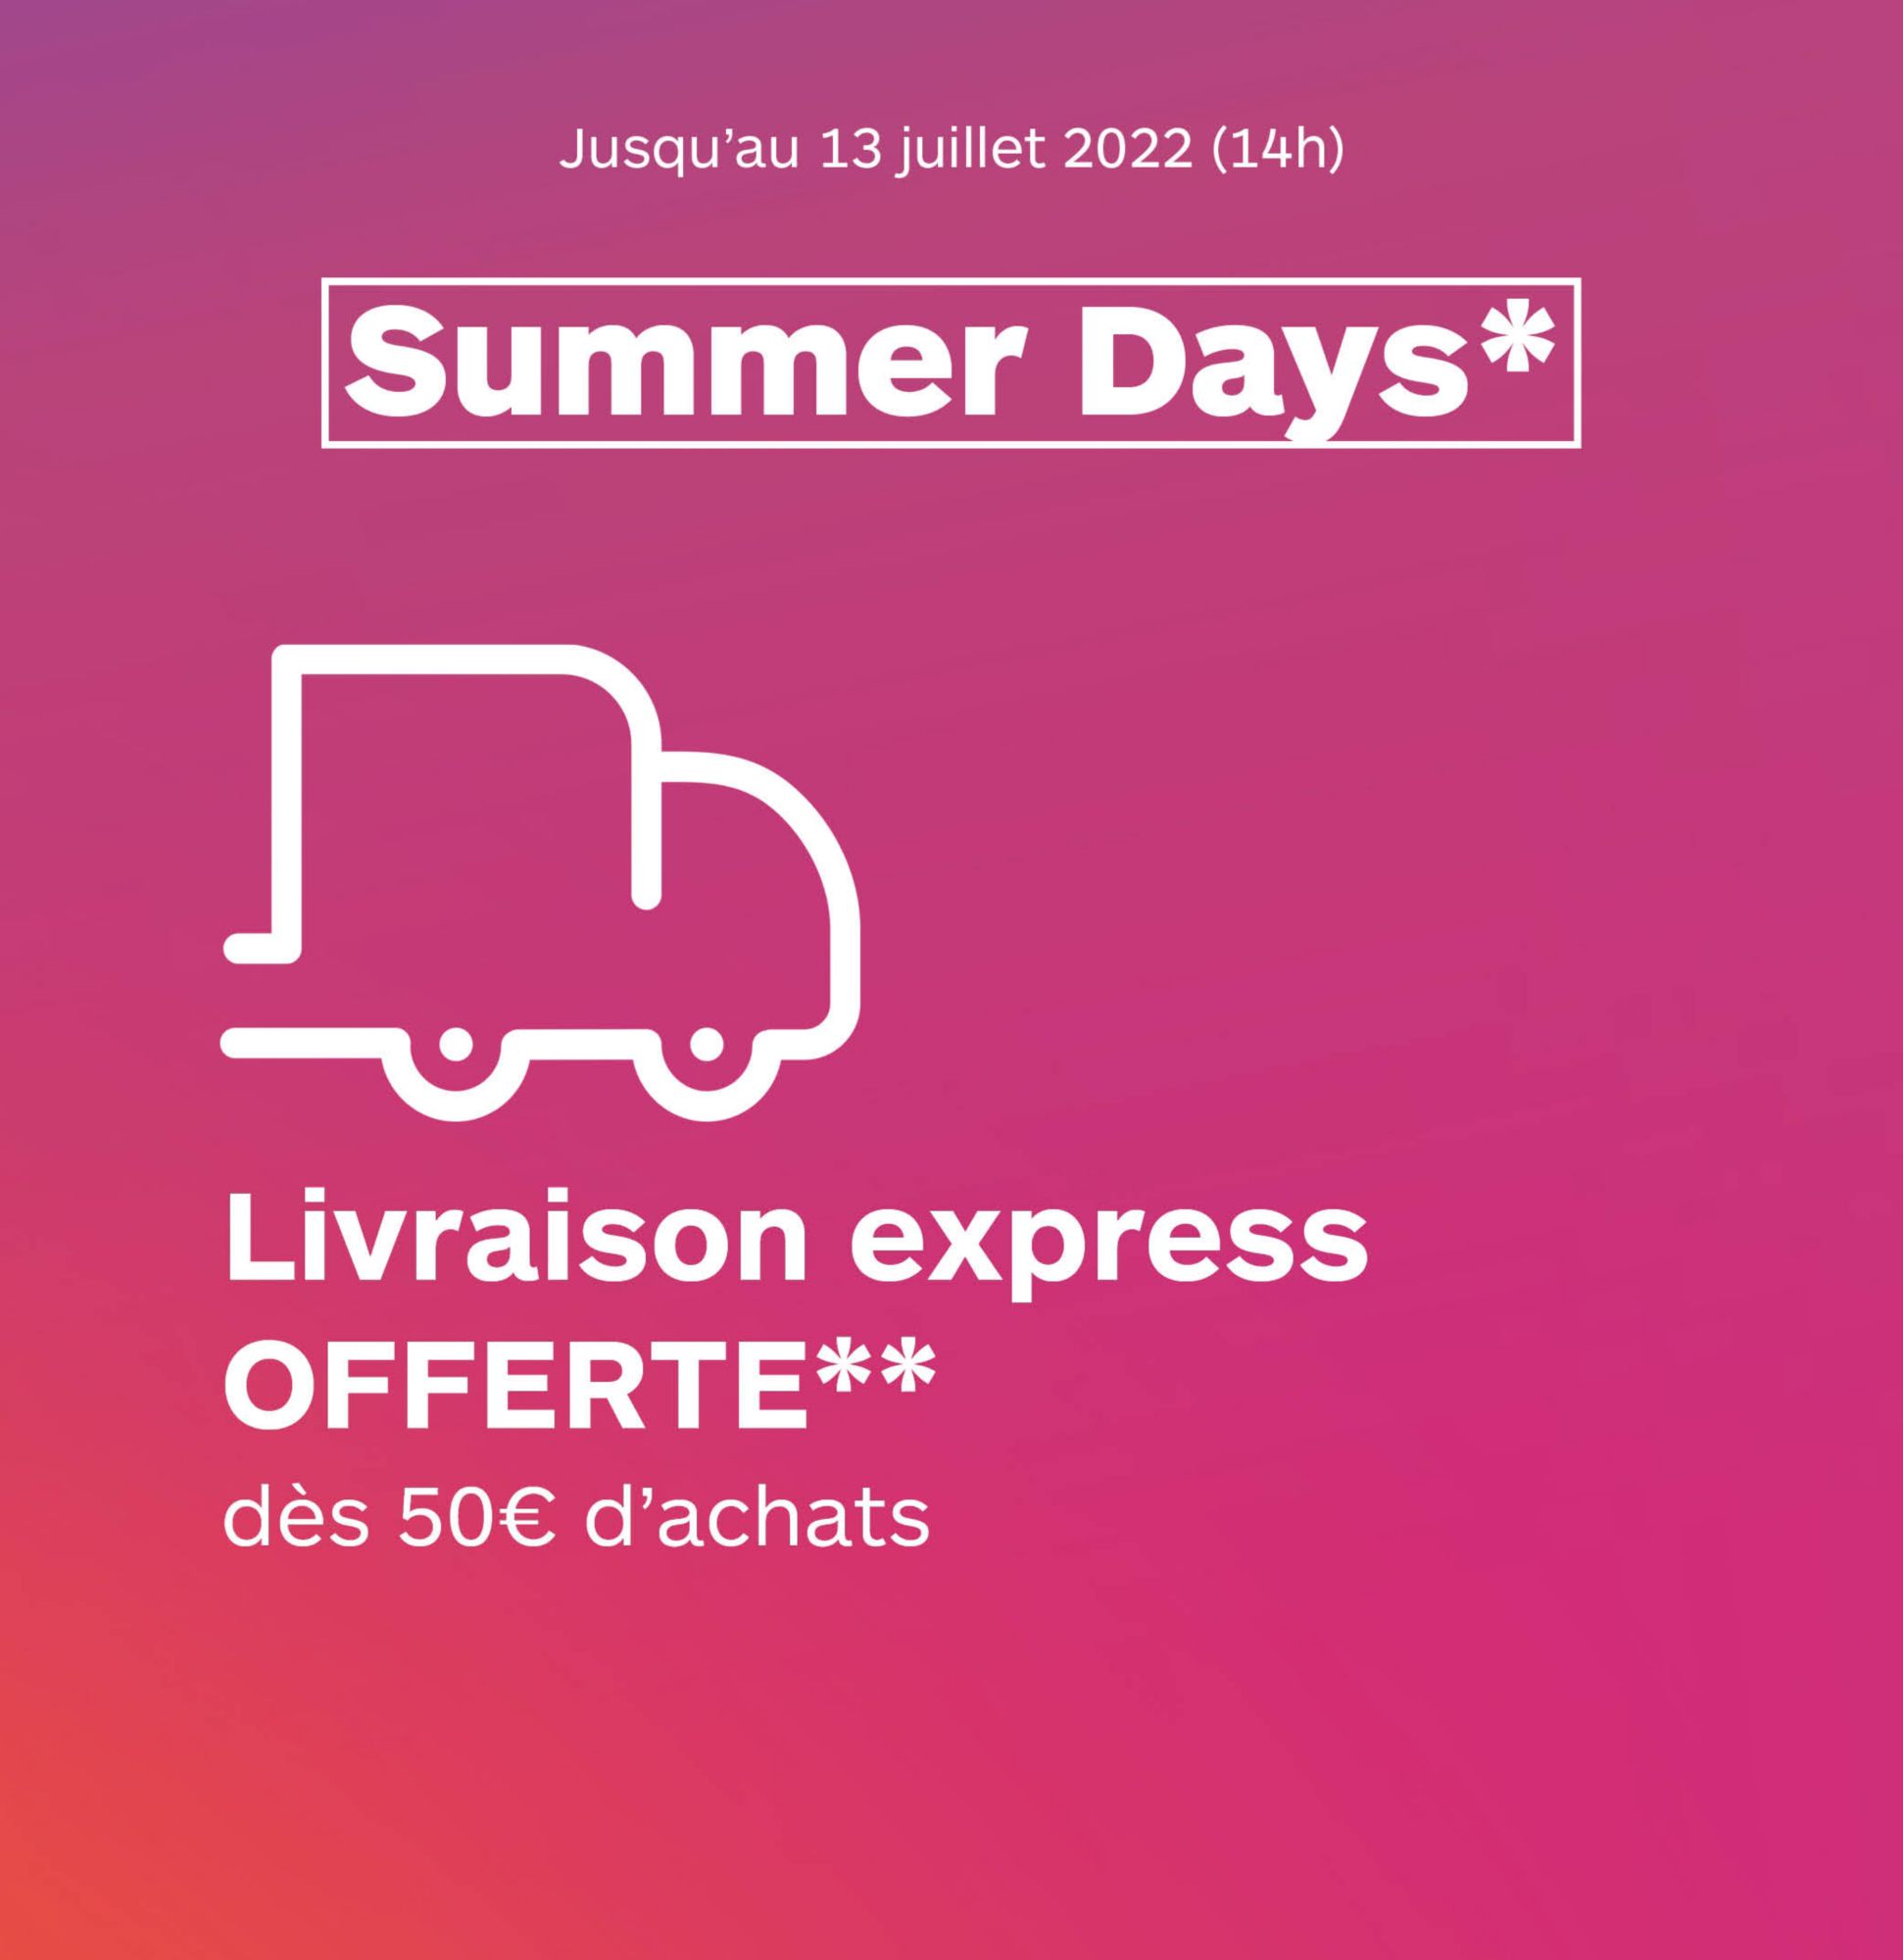 Livraison express offerte dès 50€ d'achats